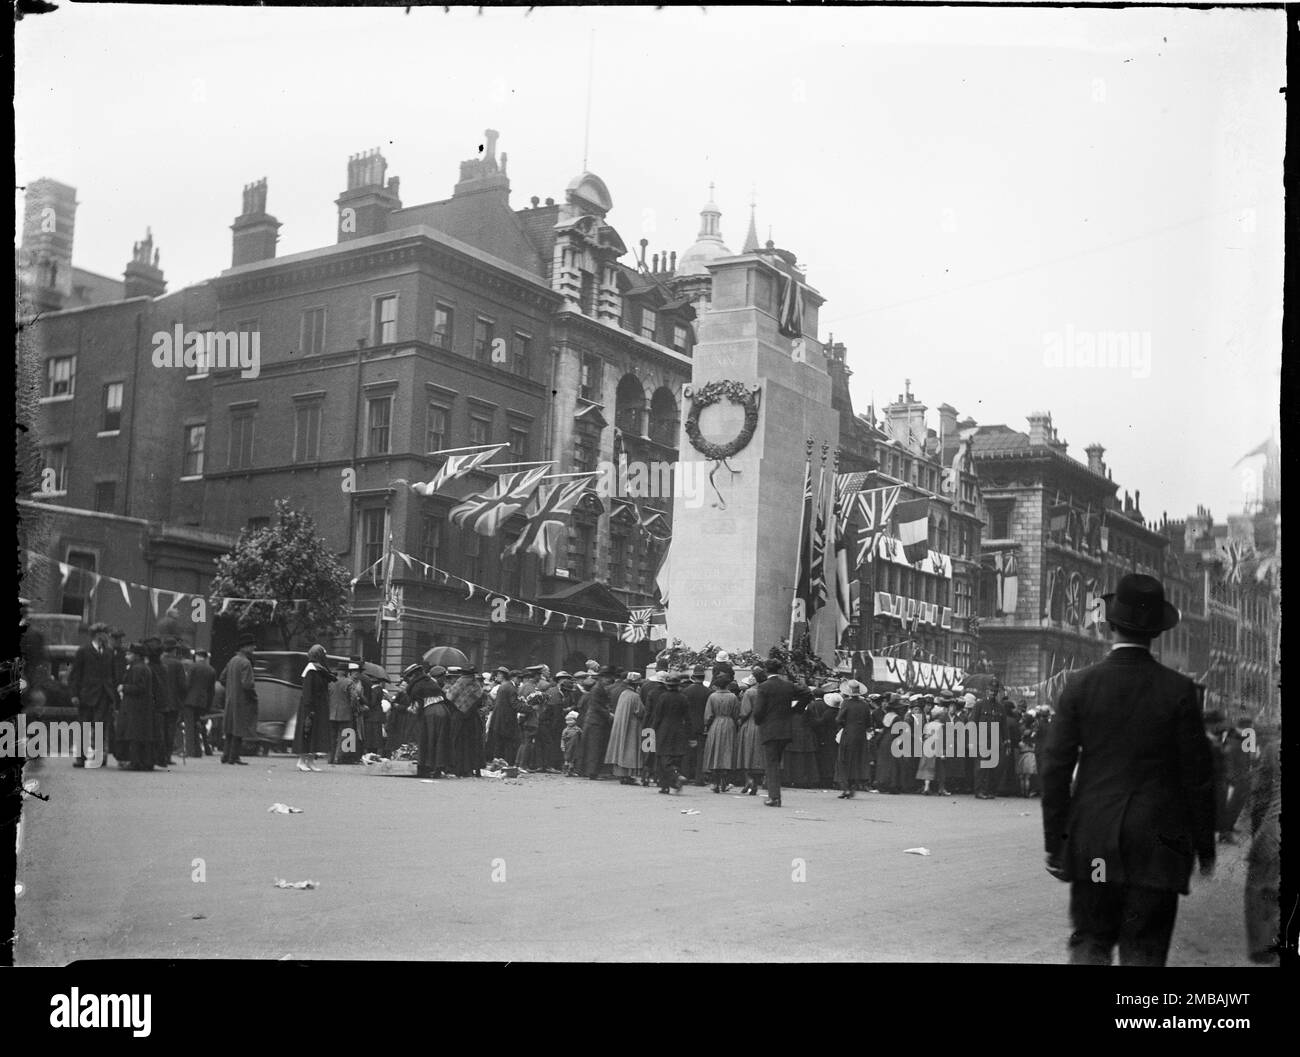 Cenotaph, Whitehall, Westminster, City of Westminster, Greater London Authority, 1919. Ein Blick auf eine Menschenmenge, die sich um den Cenotaph auf Whitehall zu den Feierlichkeiten zum Friedenstag versammelt hat, mit Flaggen und Wölfen auf den Gebäuden dahinter. Dieses Foto gehört zu einer Gruppe, die der Fotograf am 18., 21. &Amp; 23. Juli 1919 aufnahm und die Friedensdekorationen aufnahm, die zum Friedenstag am 19. Juli 1919 in London zur Feier des Endes des 1. Weltkriegs errichtet wurden. Das auf dem Foto gezeigte Zenotaph wurde aus Holz und Putz gebaut und sollte nur eine Woche für den Friedenstag stehen Stockfoto